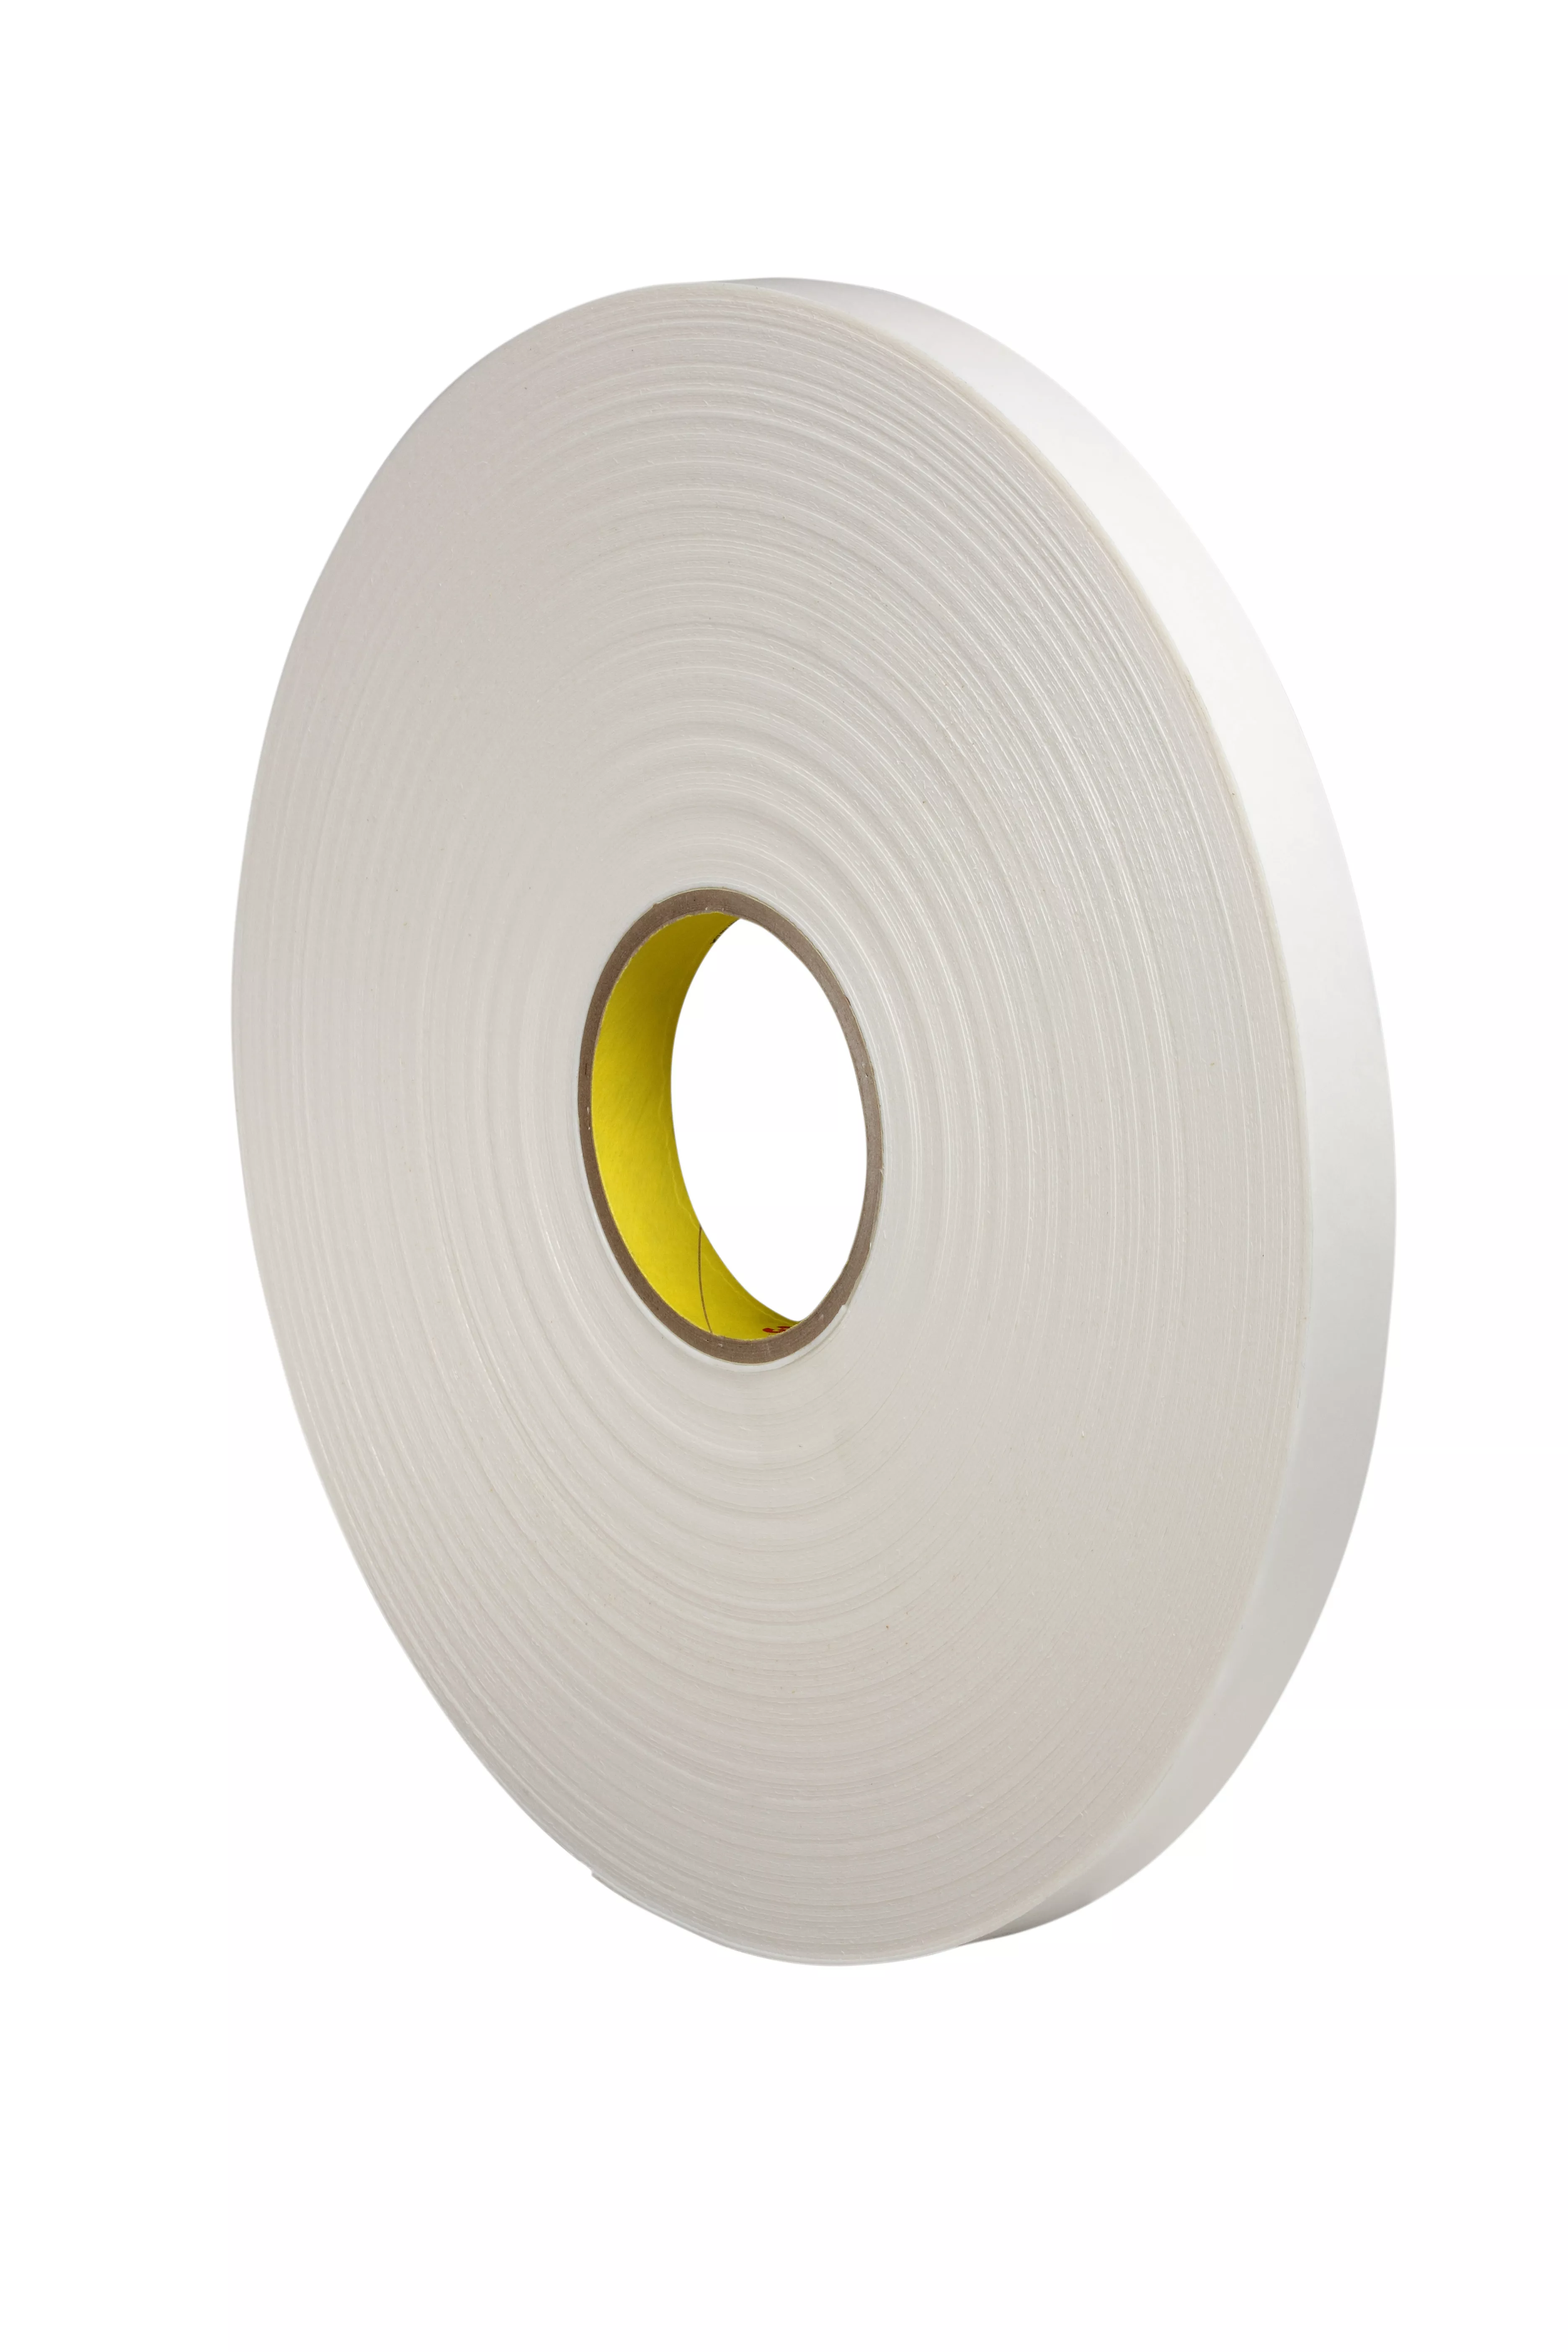 3M™ Double Coated Polyethylene Foam Tape 4462, White, 3/4 in x 72 yd, 31
mil, 12 Roll/Case